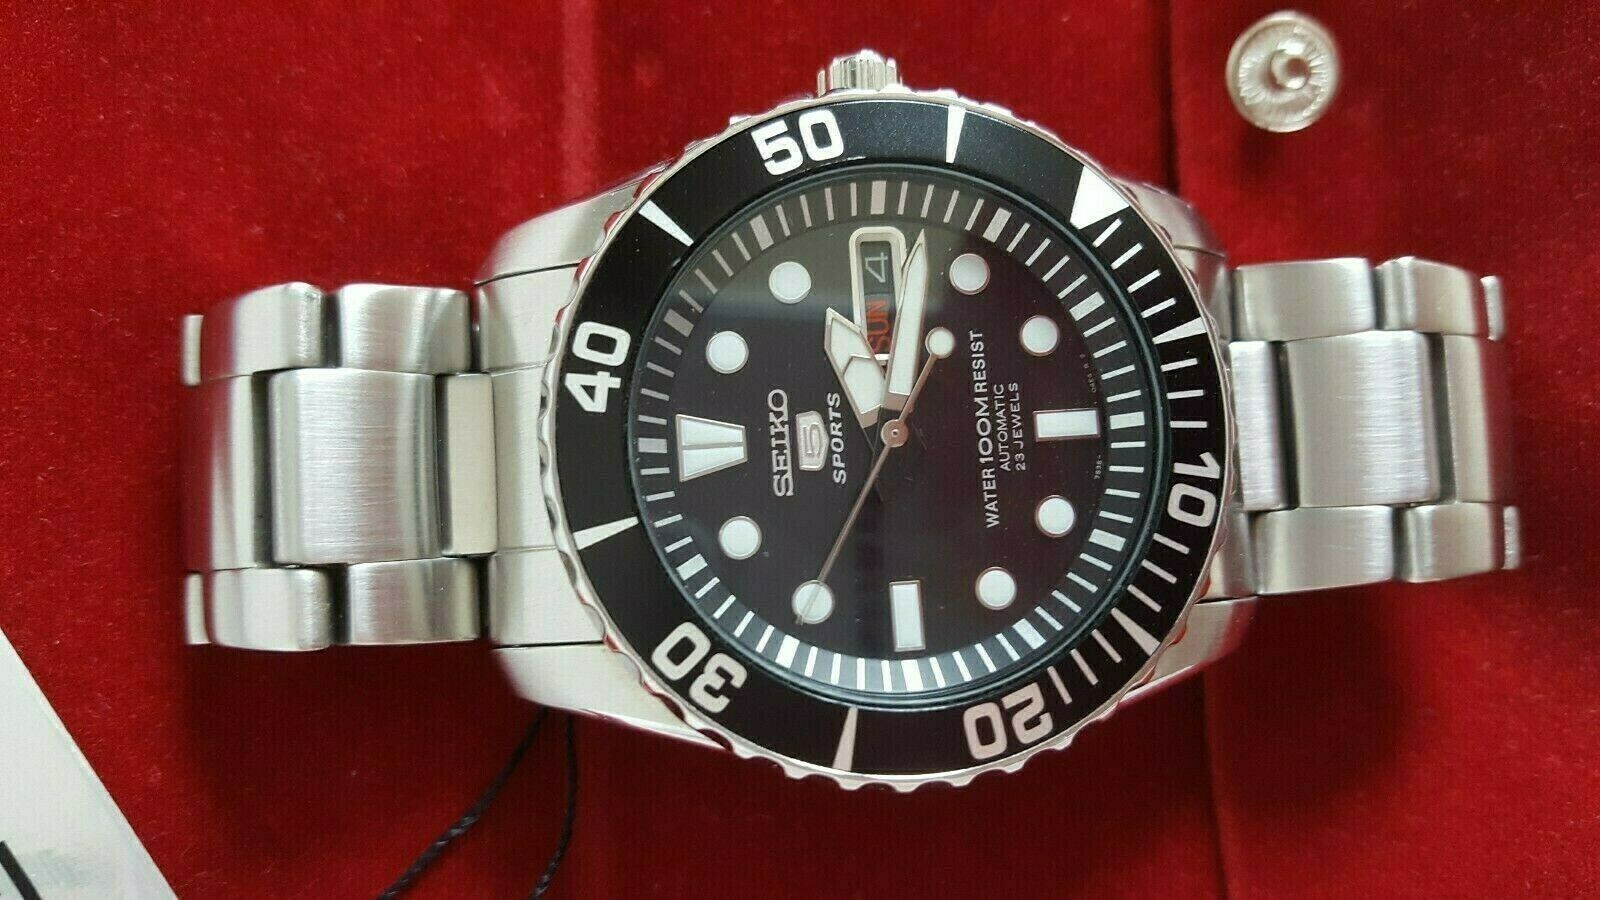 Seiko SNZF17K1 Sea Urchin / Diver 5 skx 007 submariner monster f15 master  009 | WatchCharts